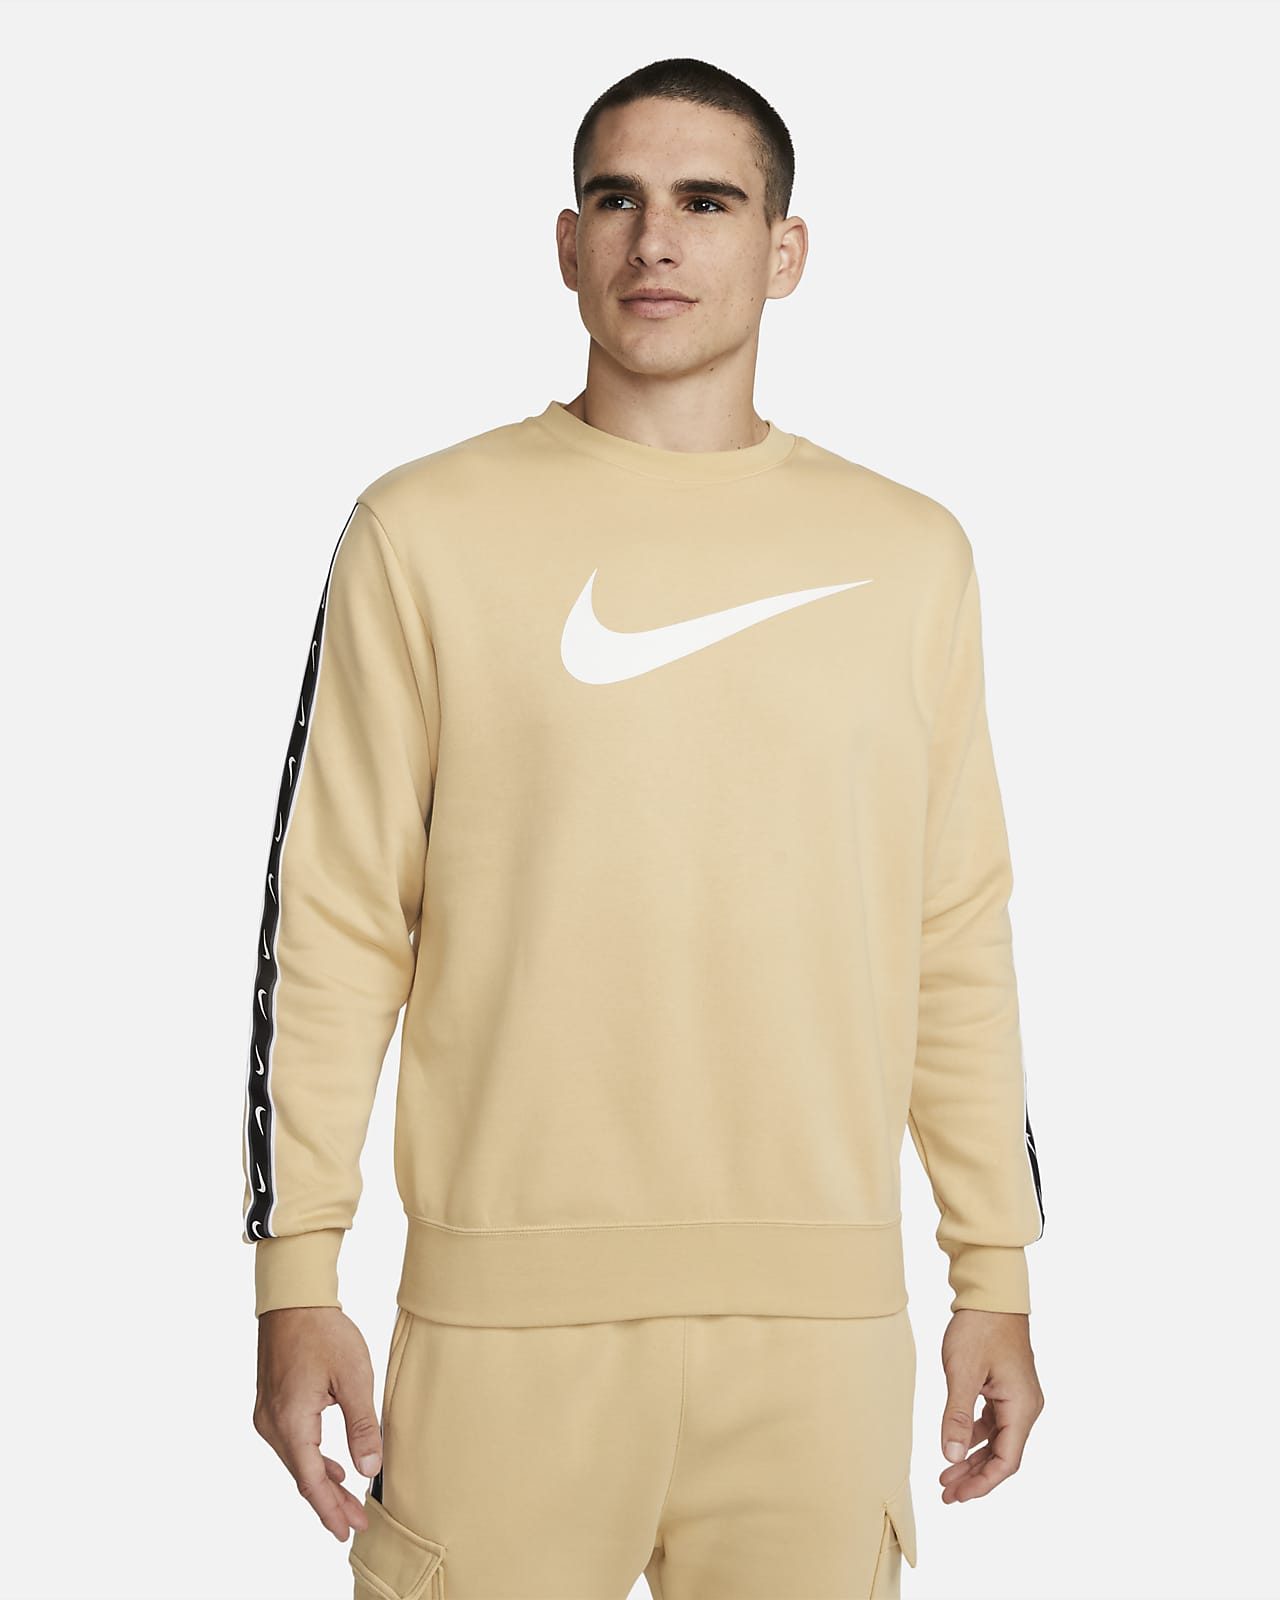 Sportswear Men's Fleece Sweatshirt. UK